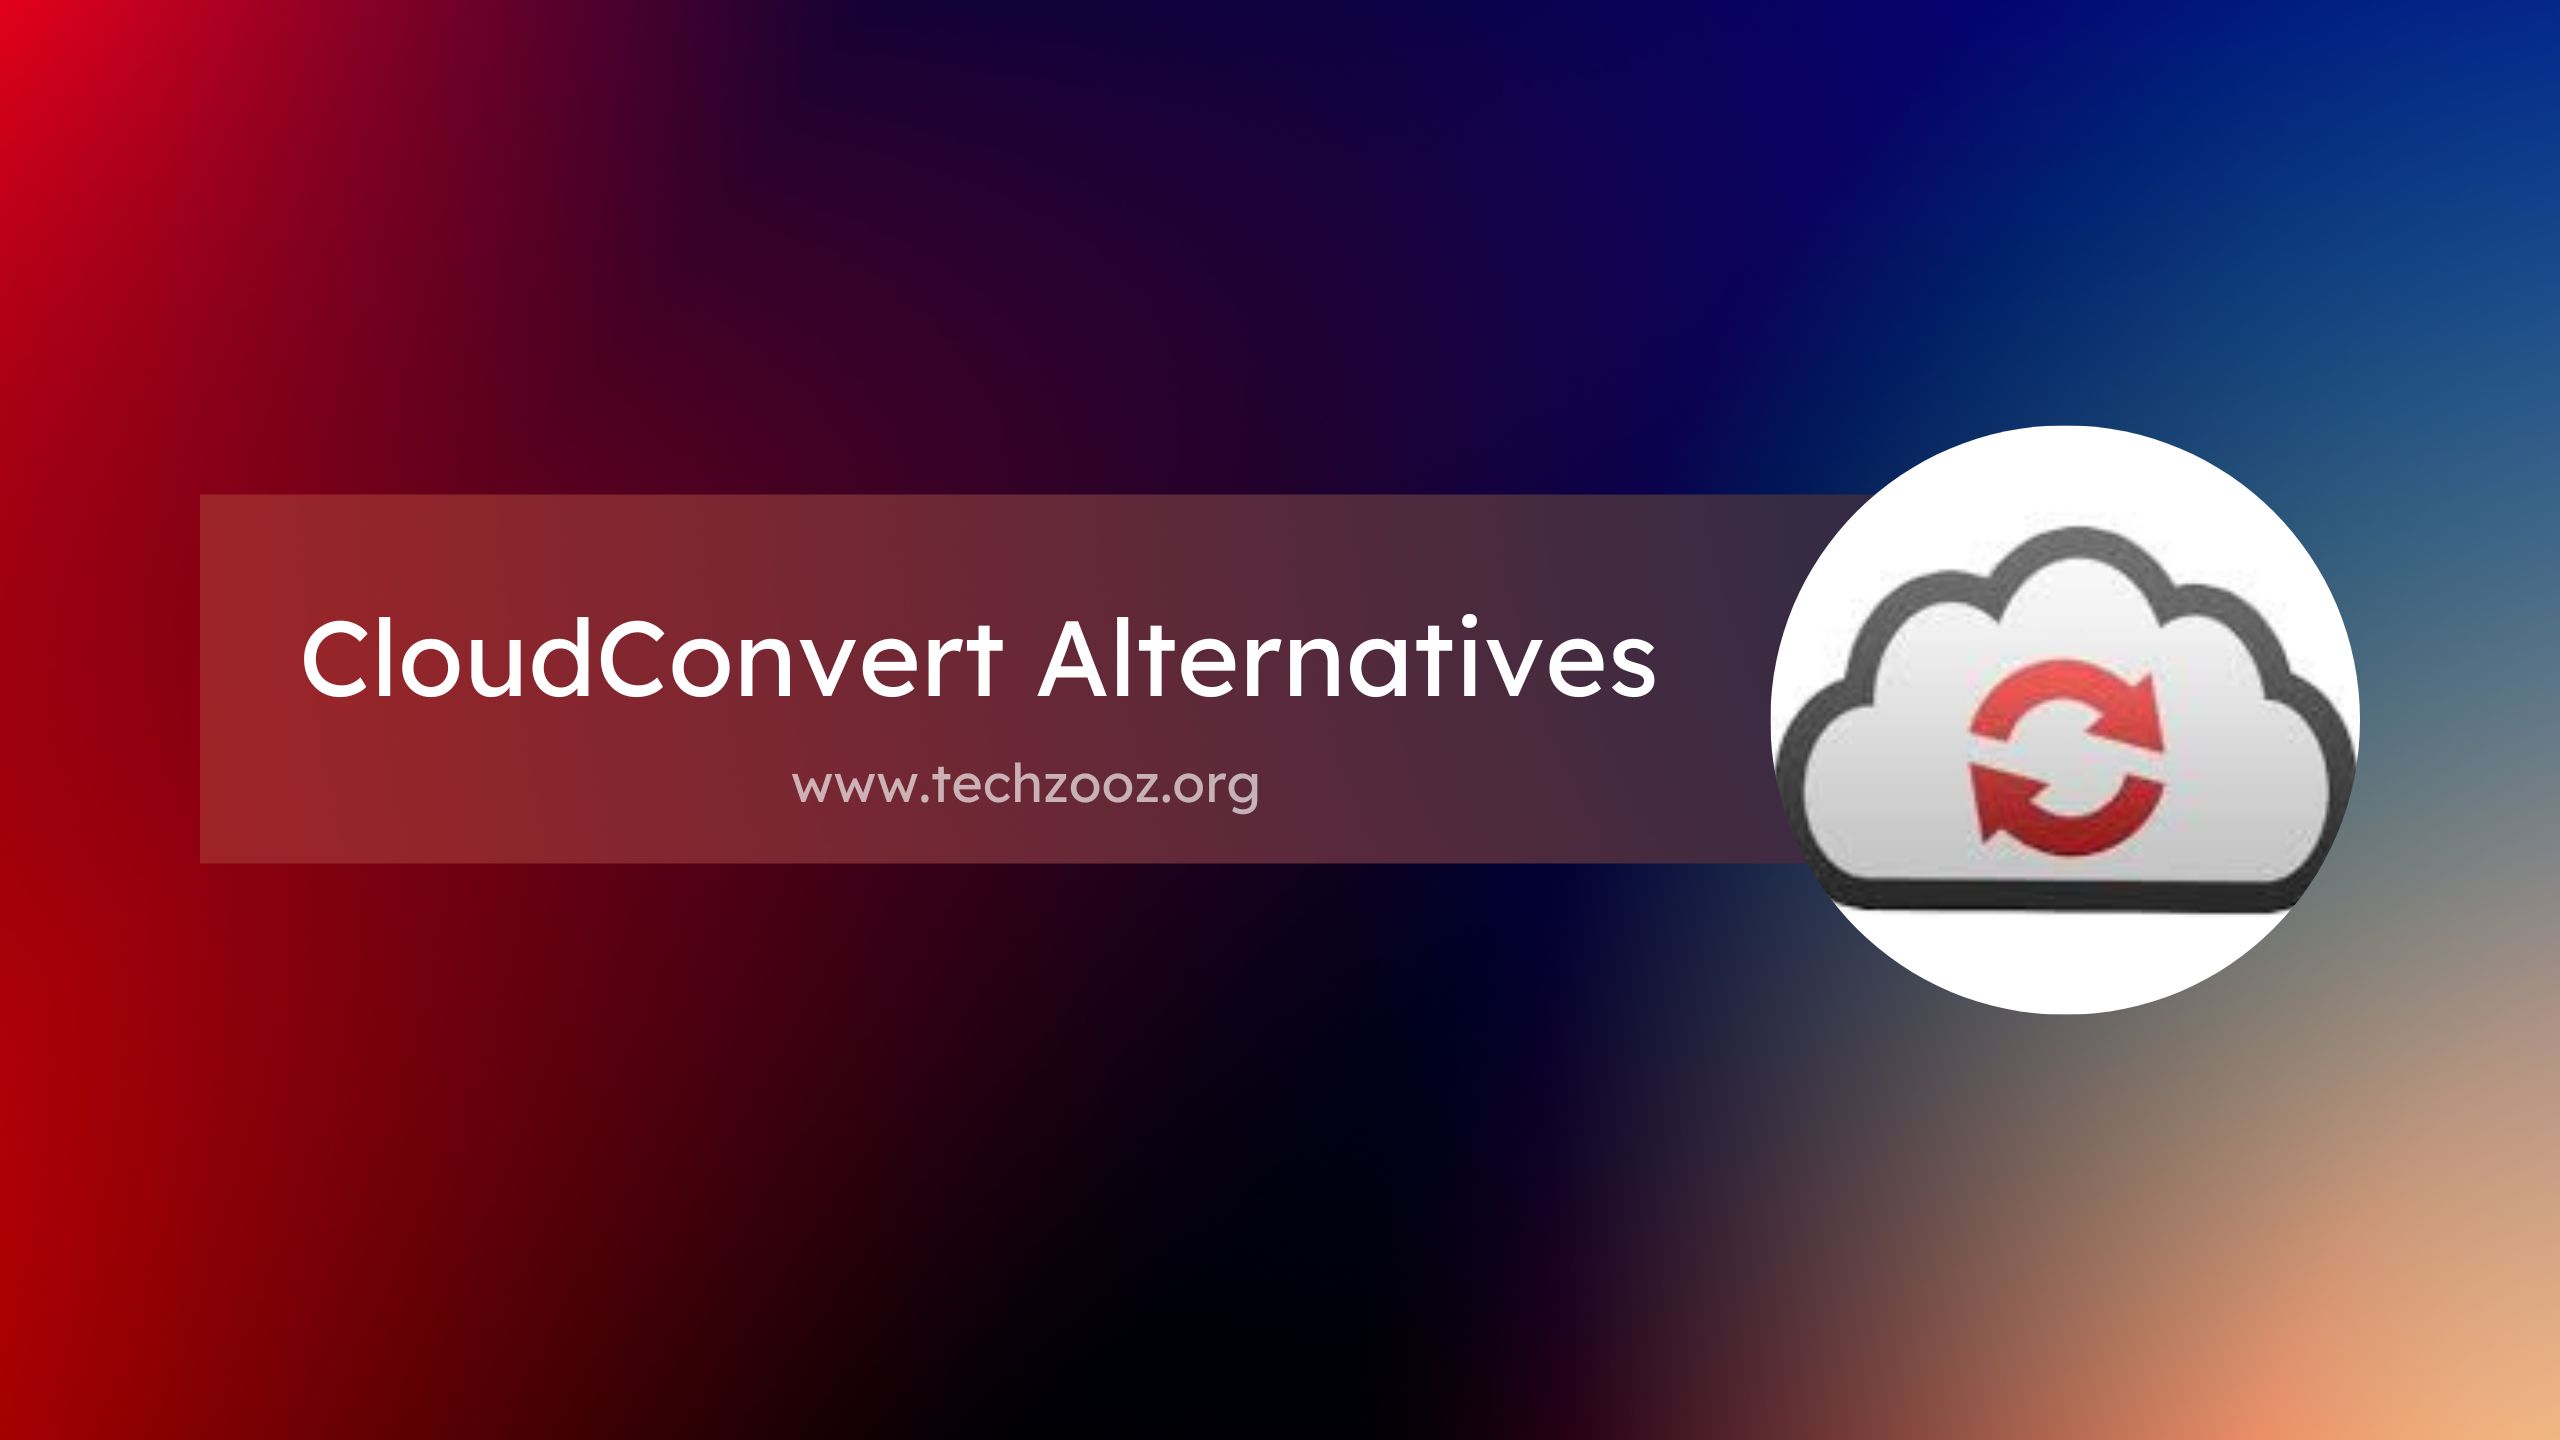 CloudConvert Alternatives